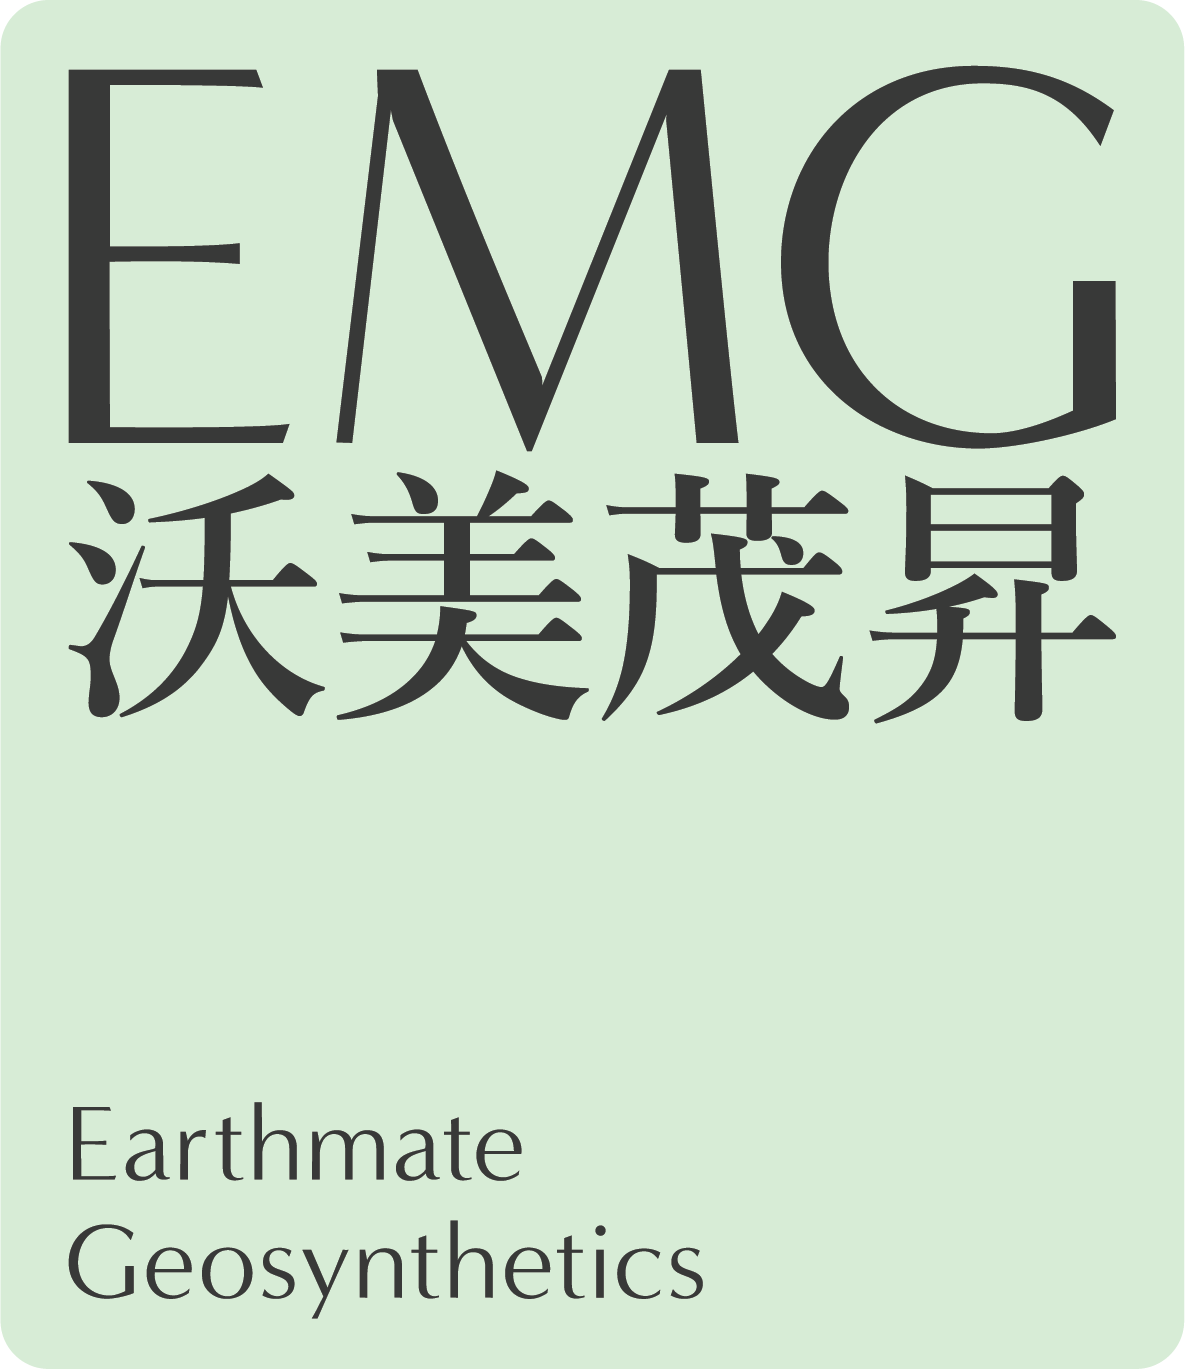 Earthmate Geosynthetics